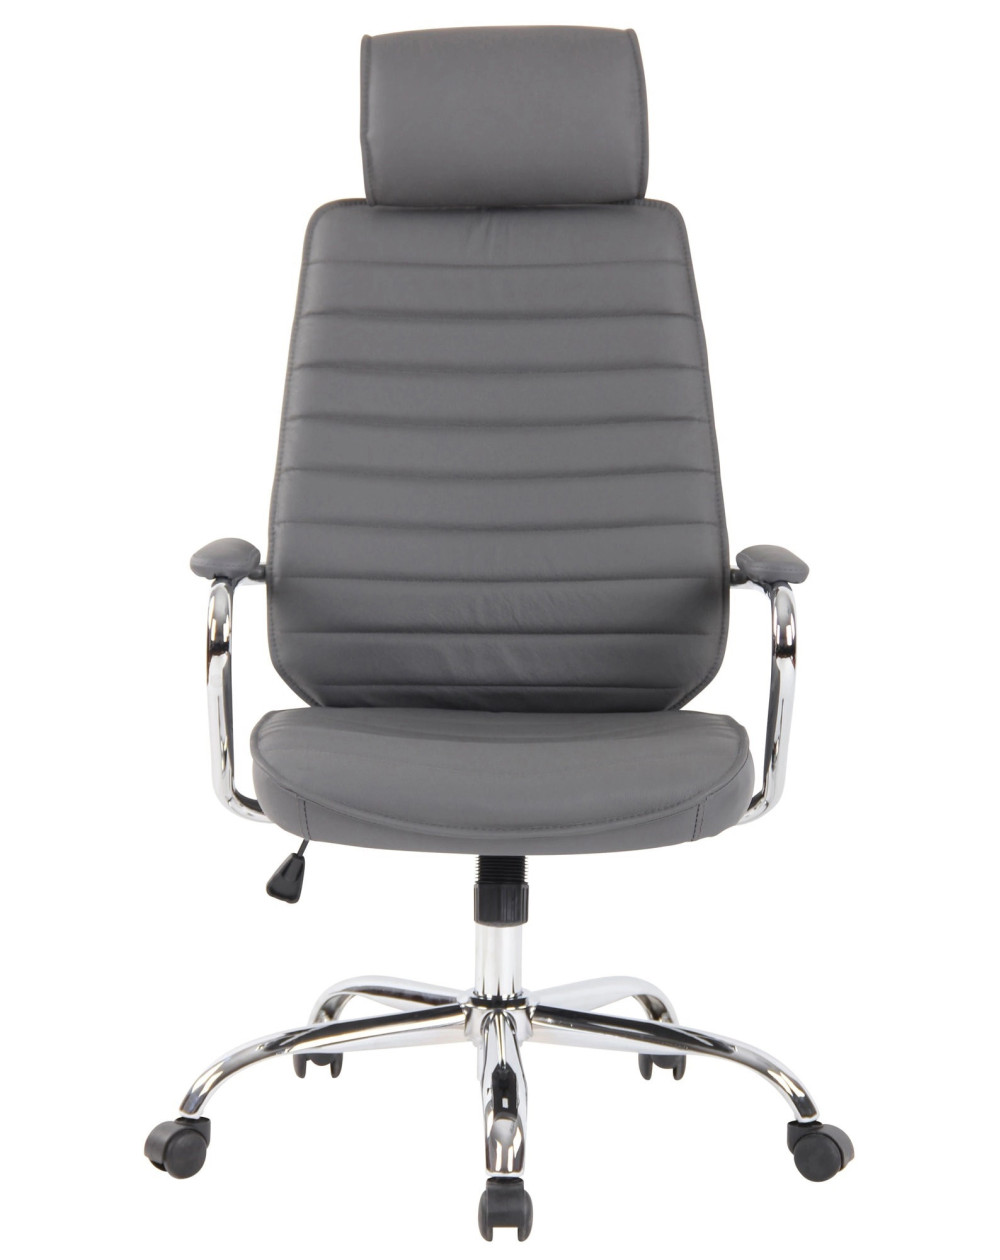 Cadeira Bit Veludo DUDECO - Material do assento: Veludo
Material de estrutura: aço reforçado
Altura total máx. / min.: 93 cm / 8